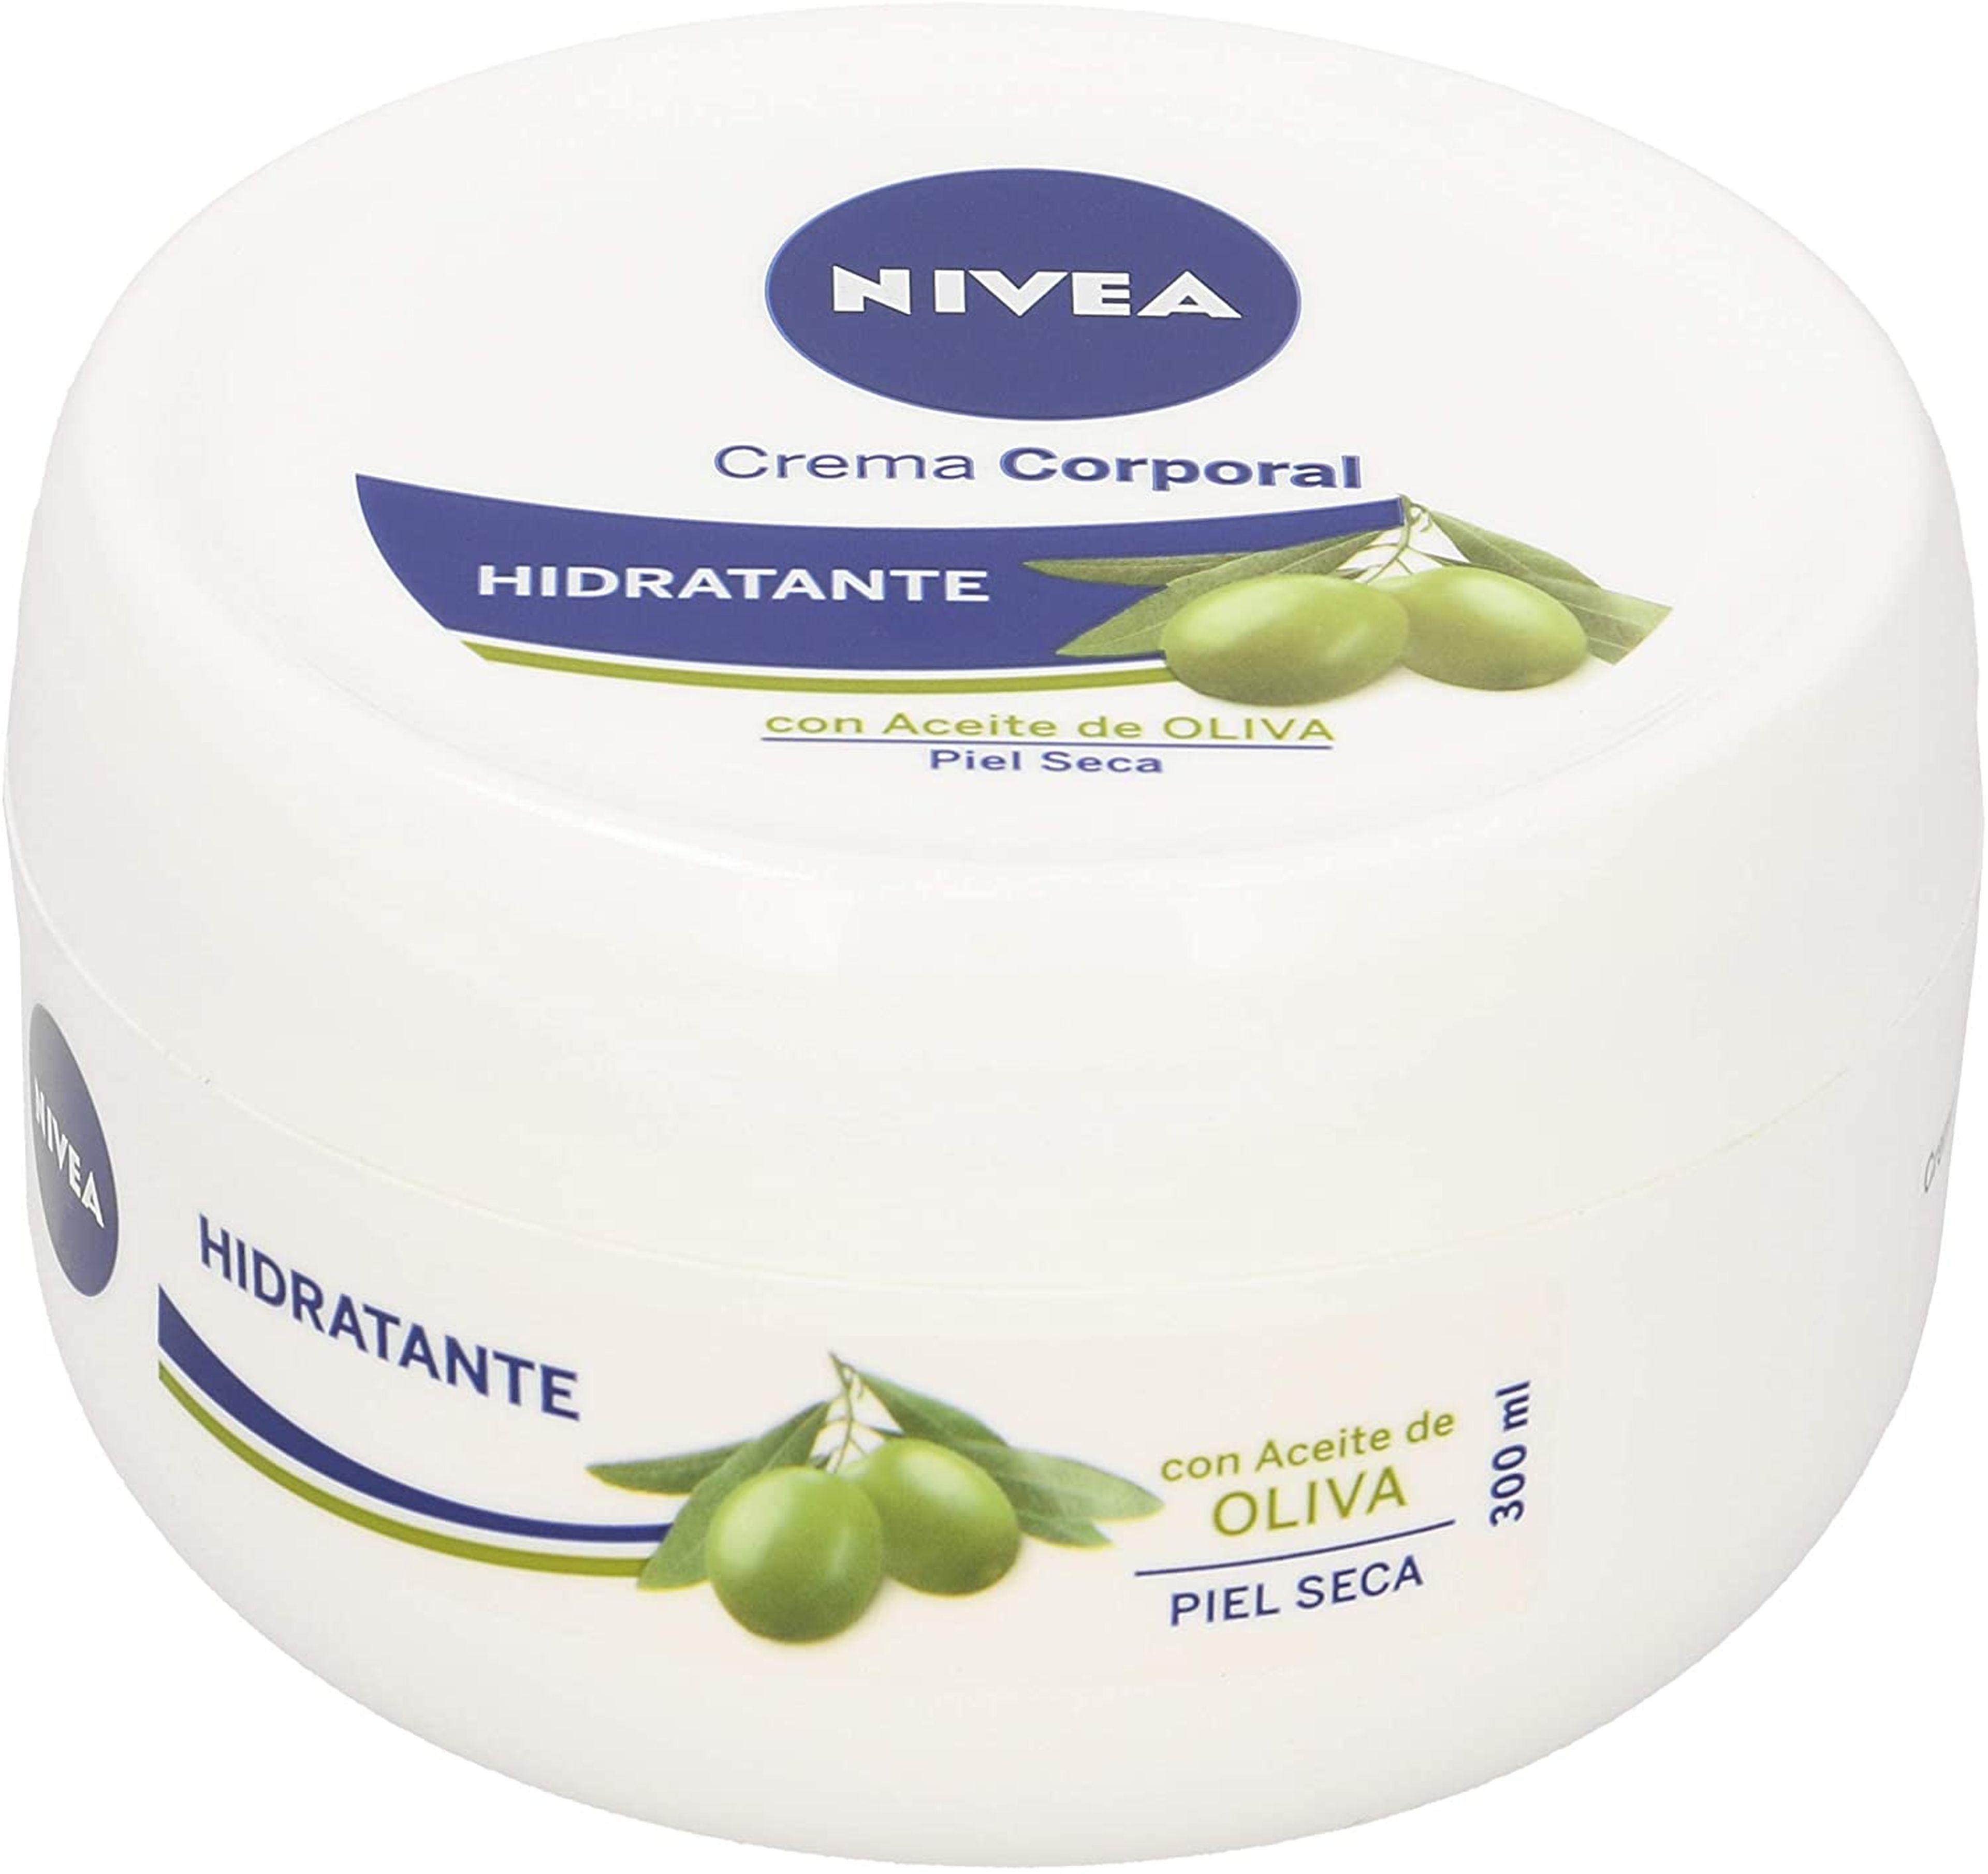 Nivea crema corporal aceite de oliva